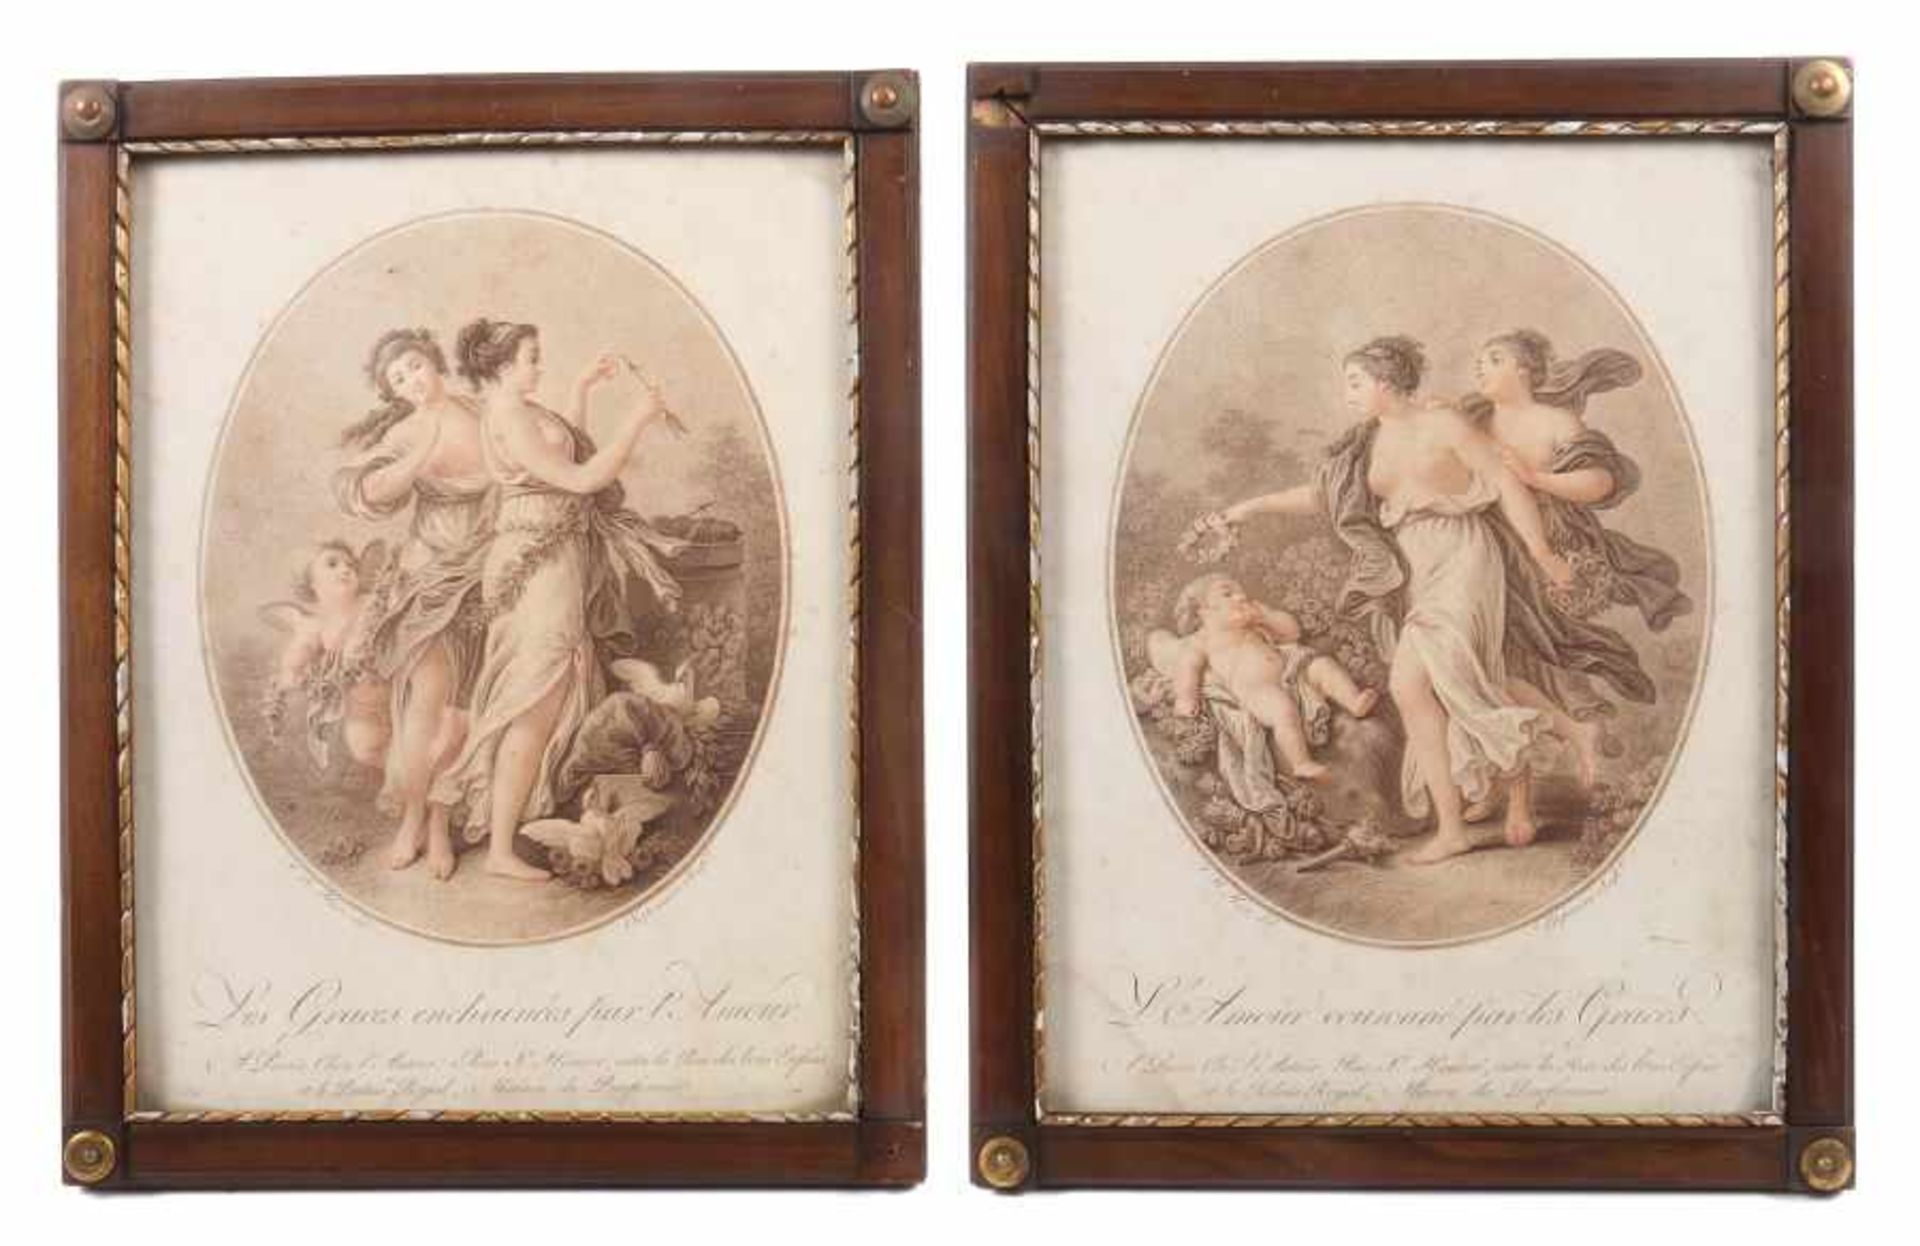 Chaponnier, Alexandre 1753 - 1805, französischer Kupferstecher. 2 mythologische Darstellungen: "L'